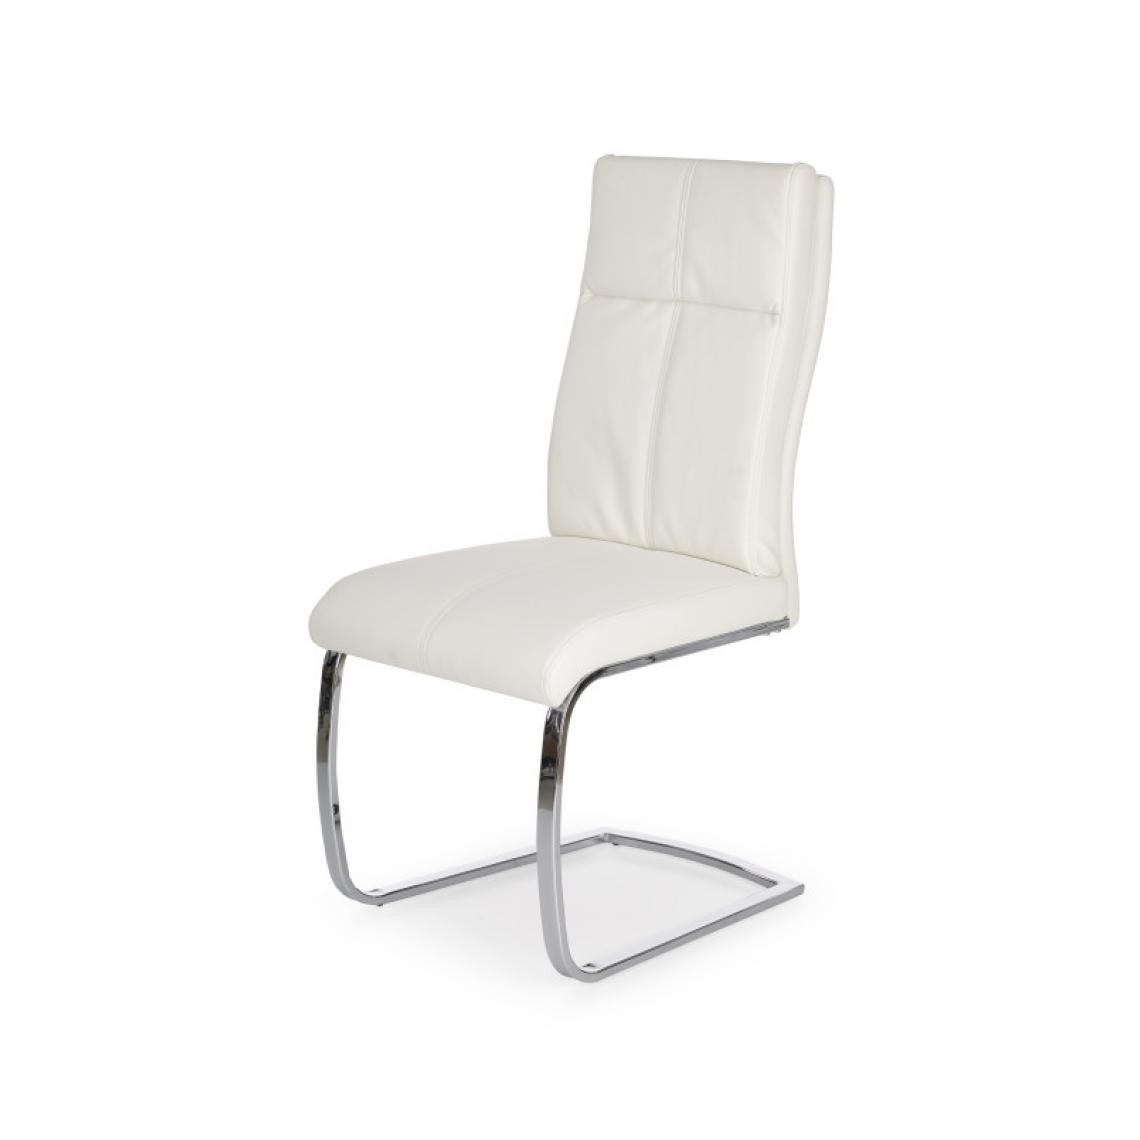 Carellia - BASTIEN lot de 2 chaises design en cuir synthétique - Blanc - Chaises